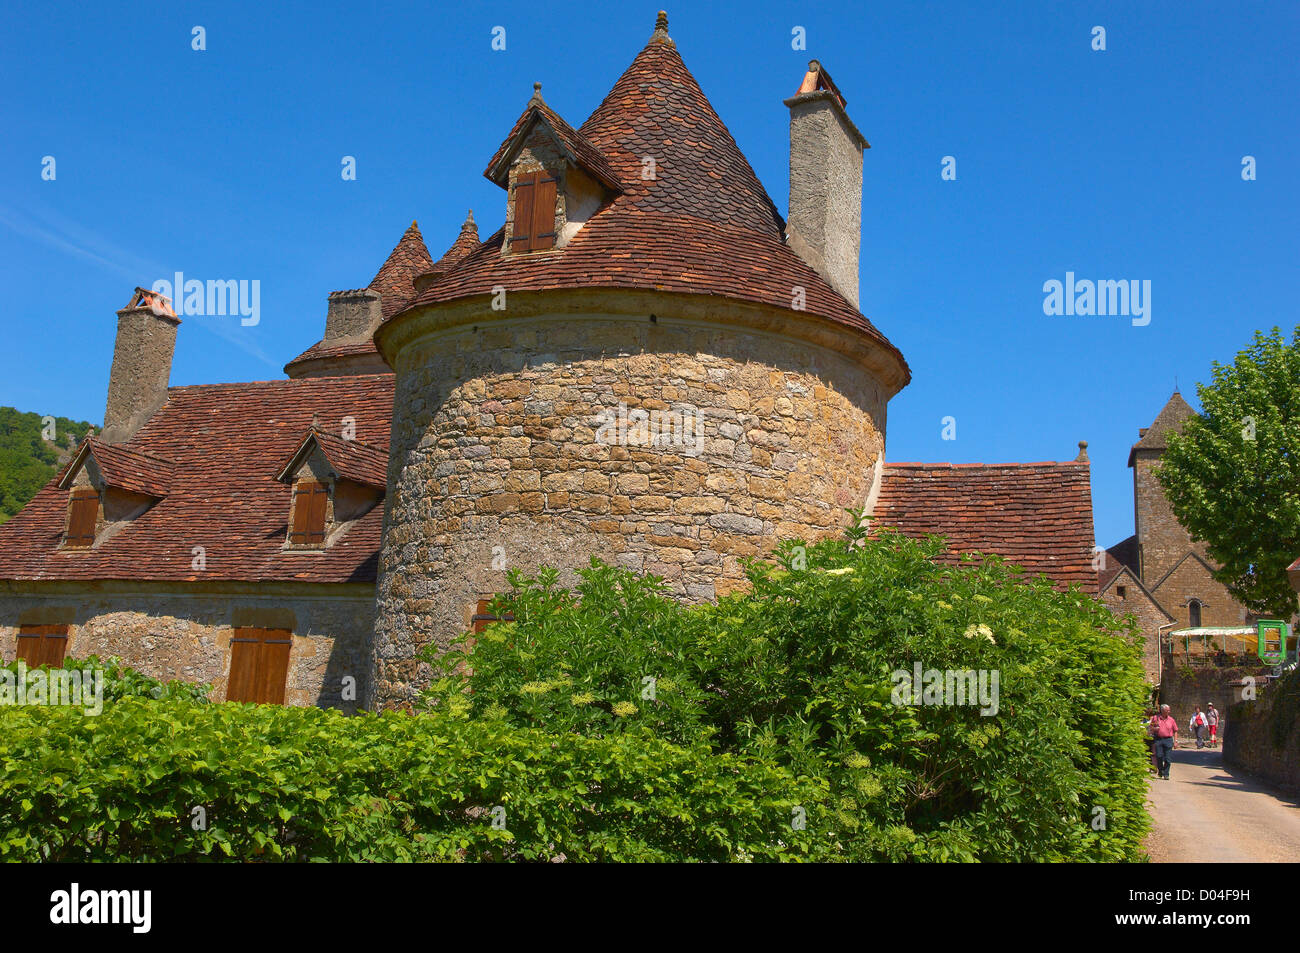 Autoire,labelled Les Plus Beaux Villages de France, The Most Beautiful Villages of France, Midi-Pyrenees Region, Lot Department Stock Photo